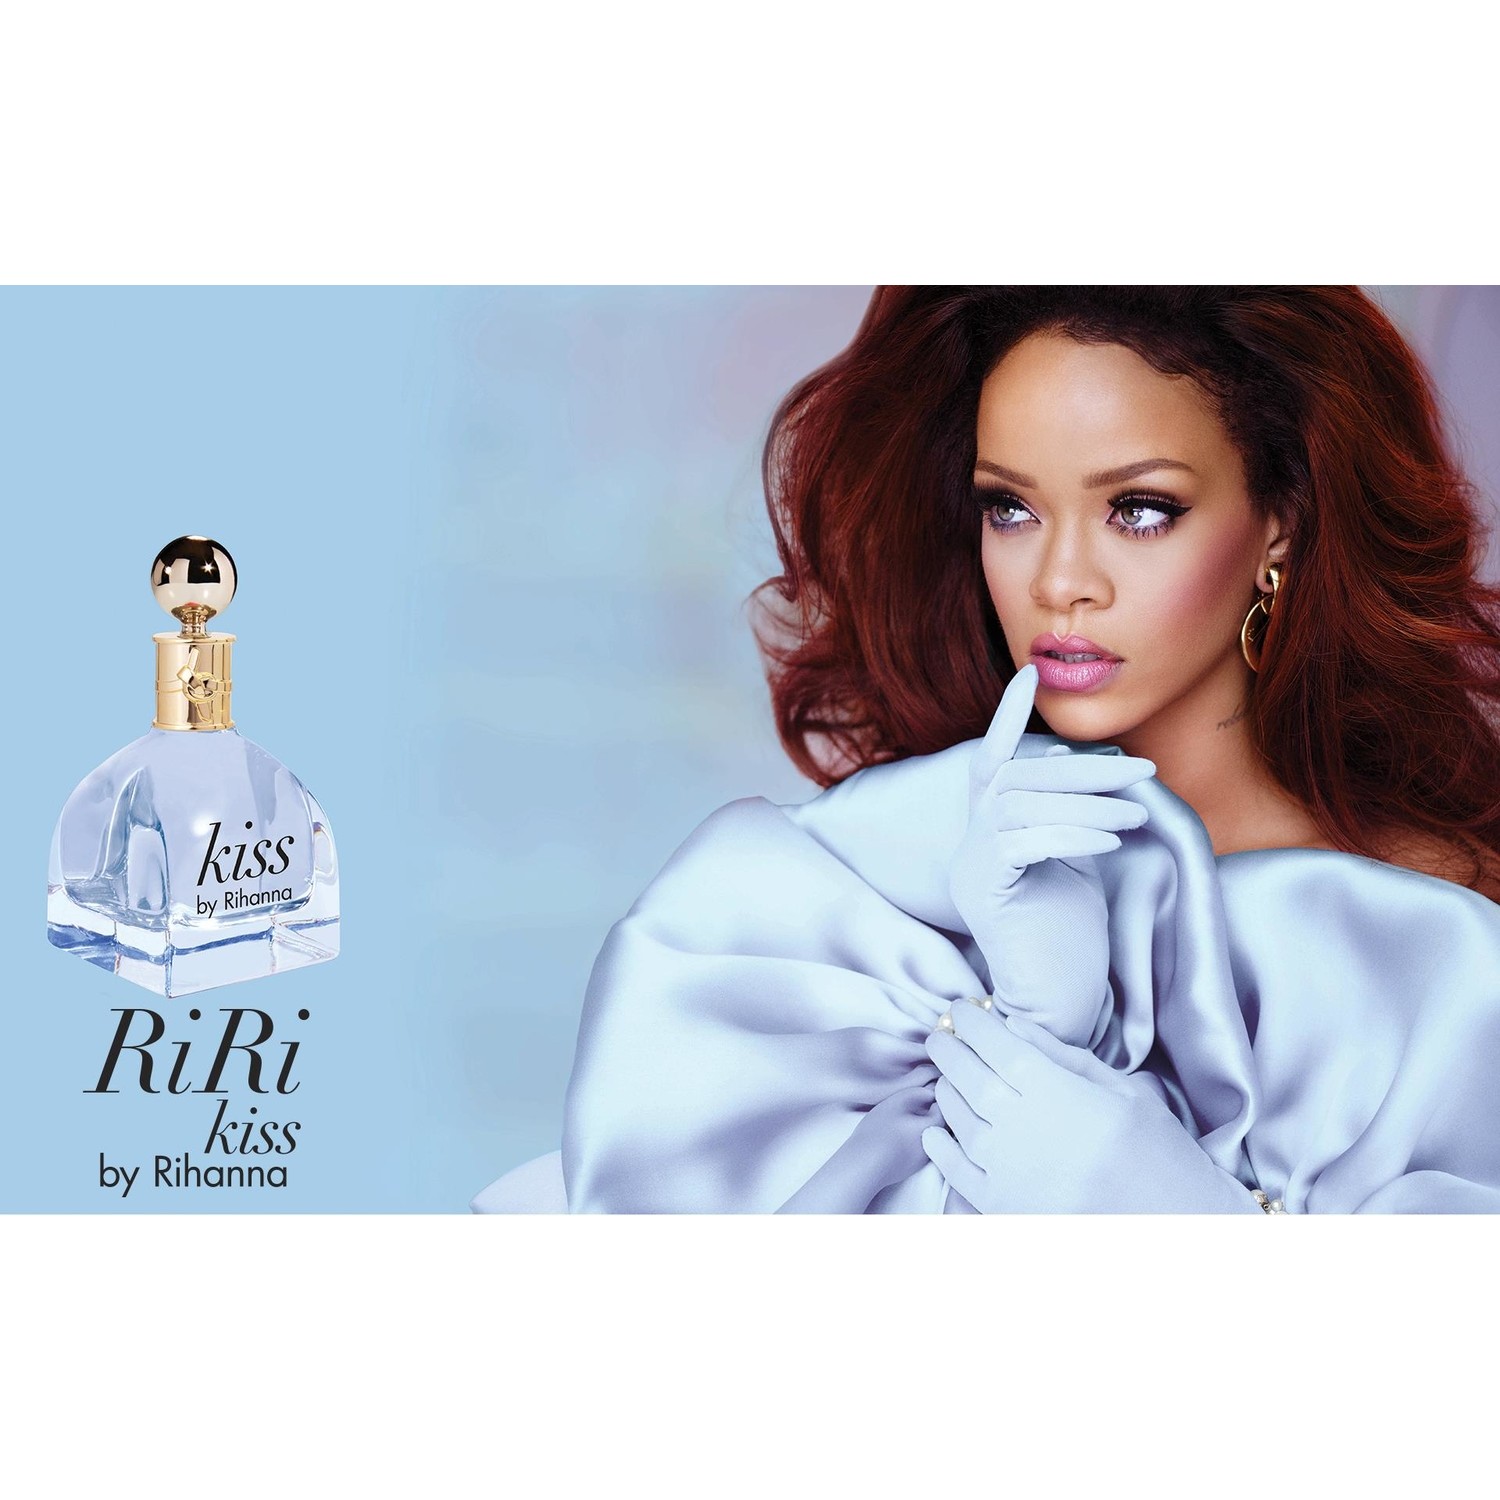 Rihanna kissed. Духи которые рекламирует Рианна. Rihanna реклама духов с женщиной. Kiss me Парфюм.